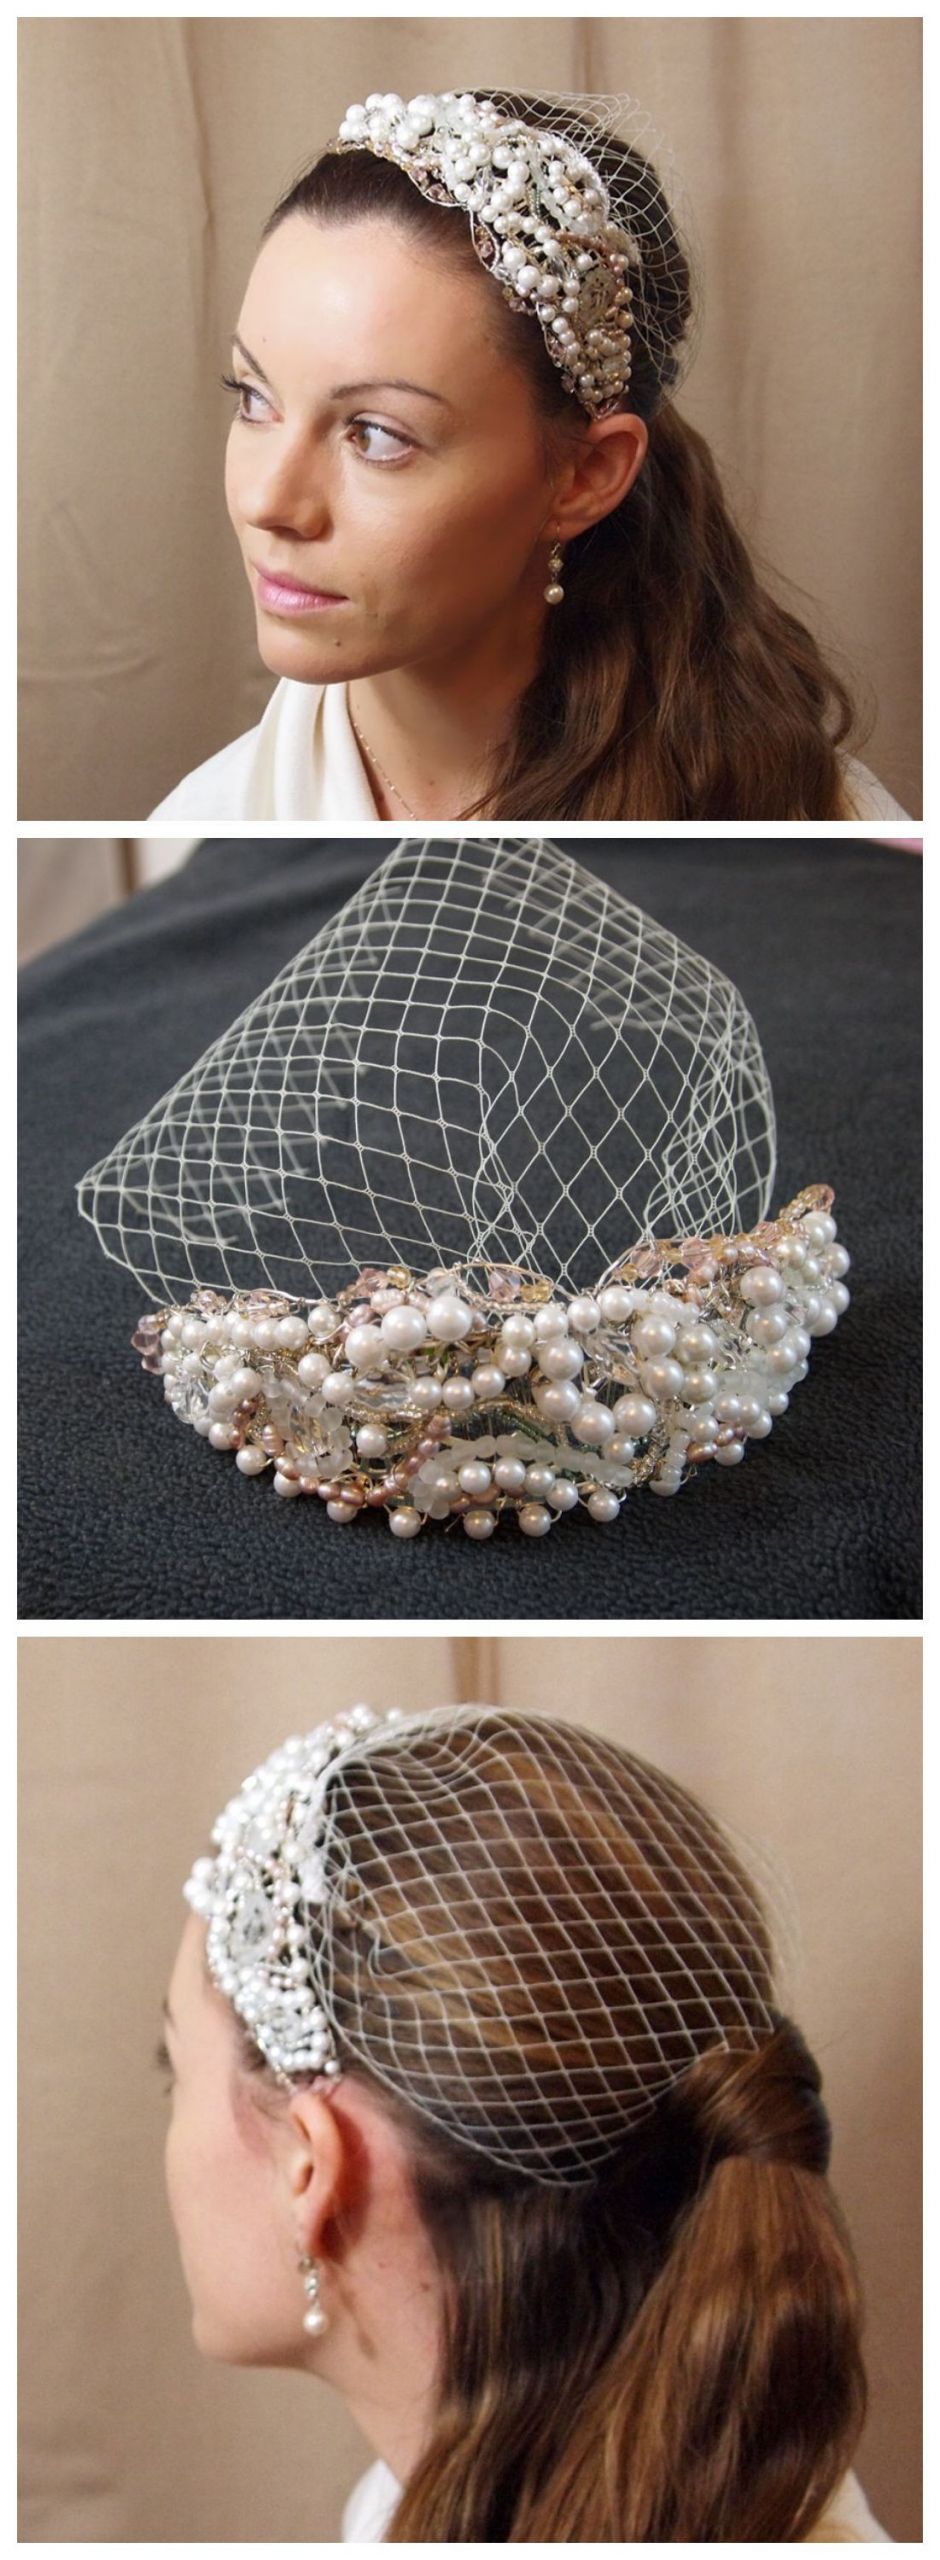 DIY Wedding Headpieces
 Unique DIY Beautiful HeadPiece & Small Veil